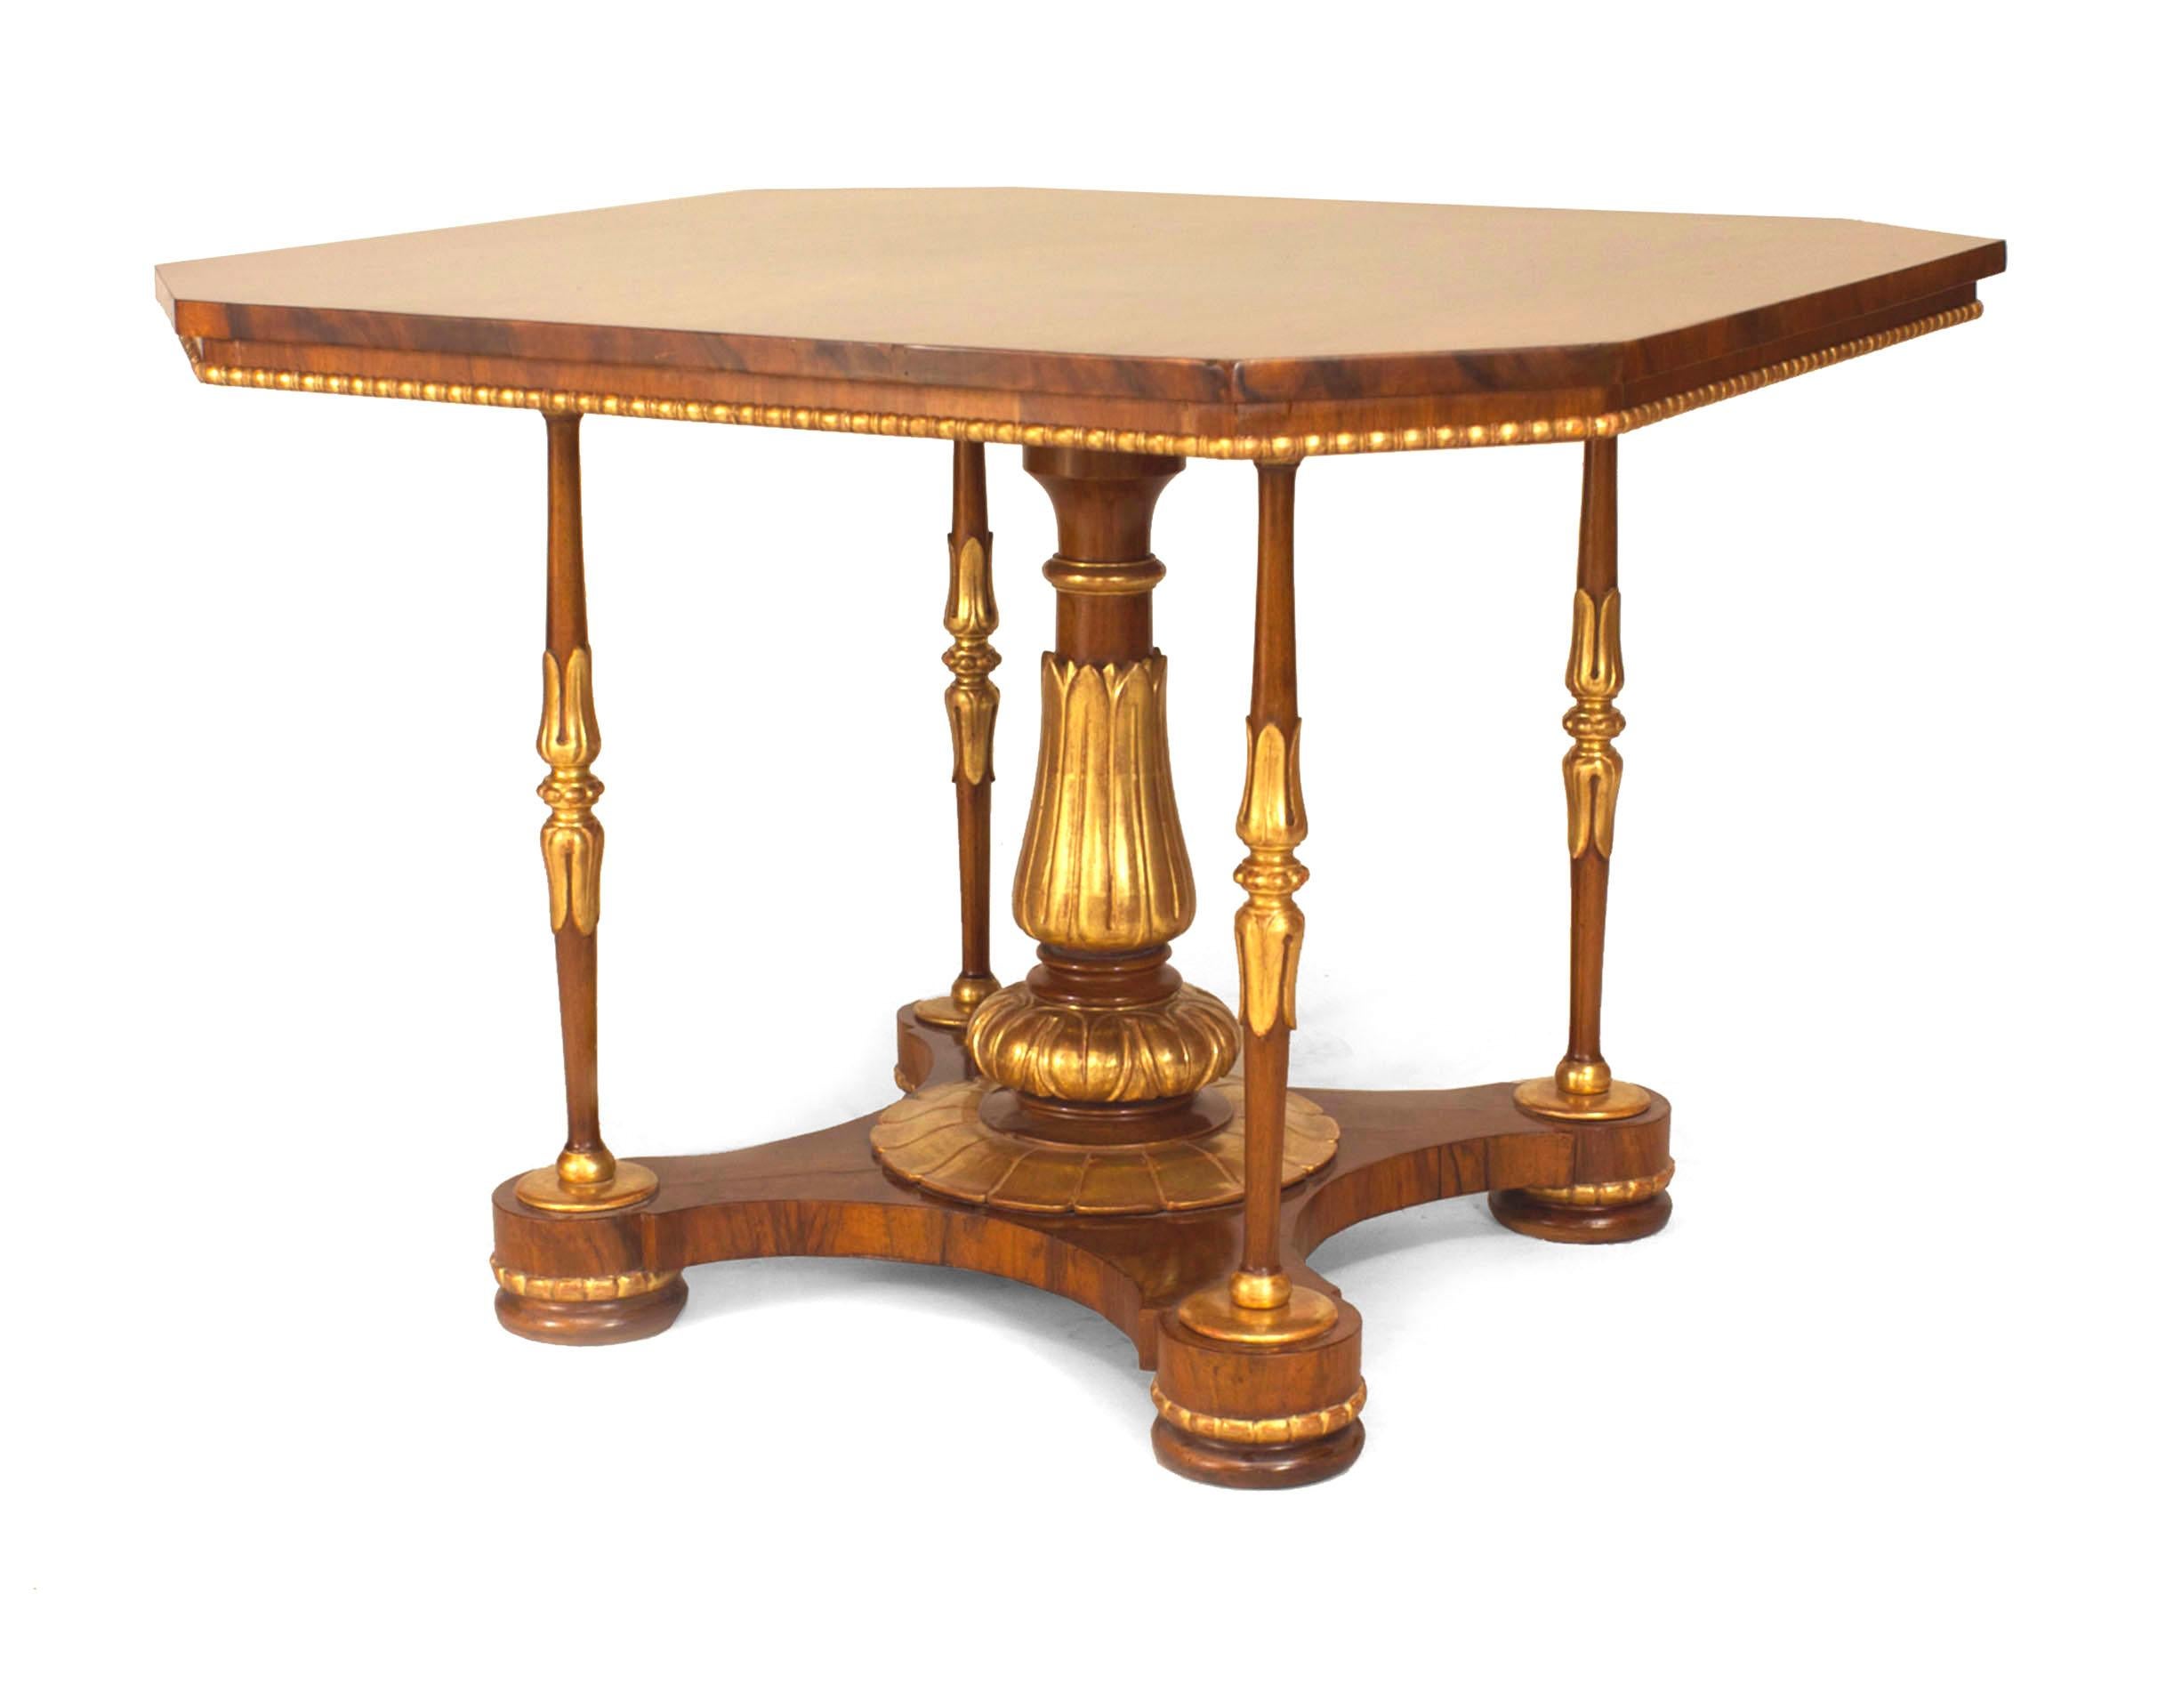 Englischer Regency-Tisch (um 1850) aus Nussbaum mit vergoldeten Verzierungen, quadratischer Tischplatte und abgeschrägten Ecken, gestützt auf einen Sockel in der Mitte und 4 Ecksäulen auf einer Plattform (MOREL & SEDDON zugeschrieben).
